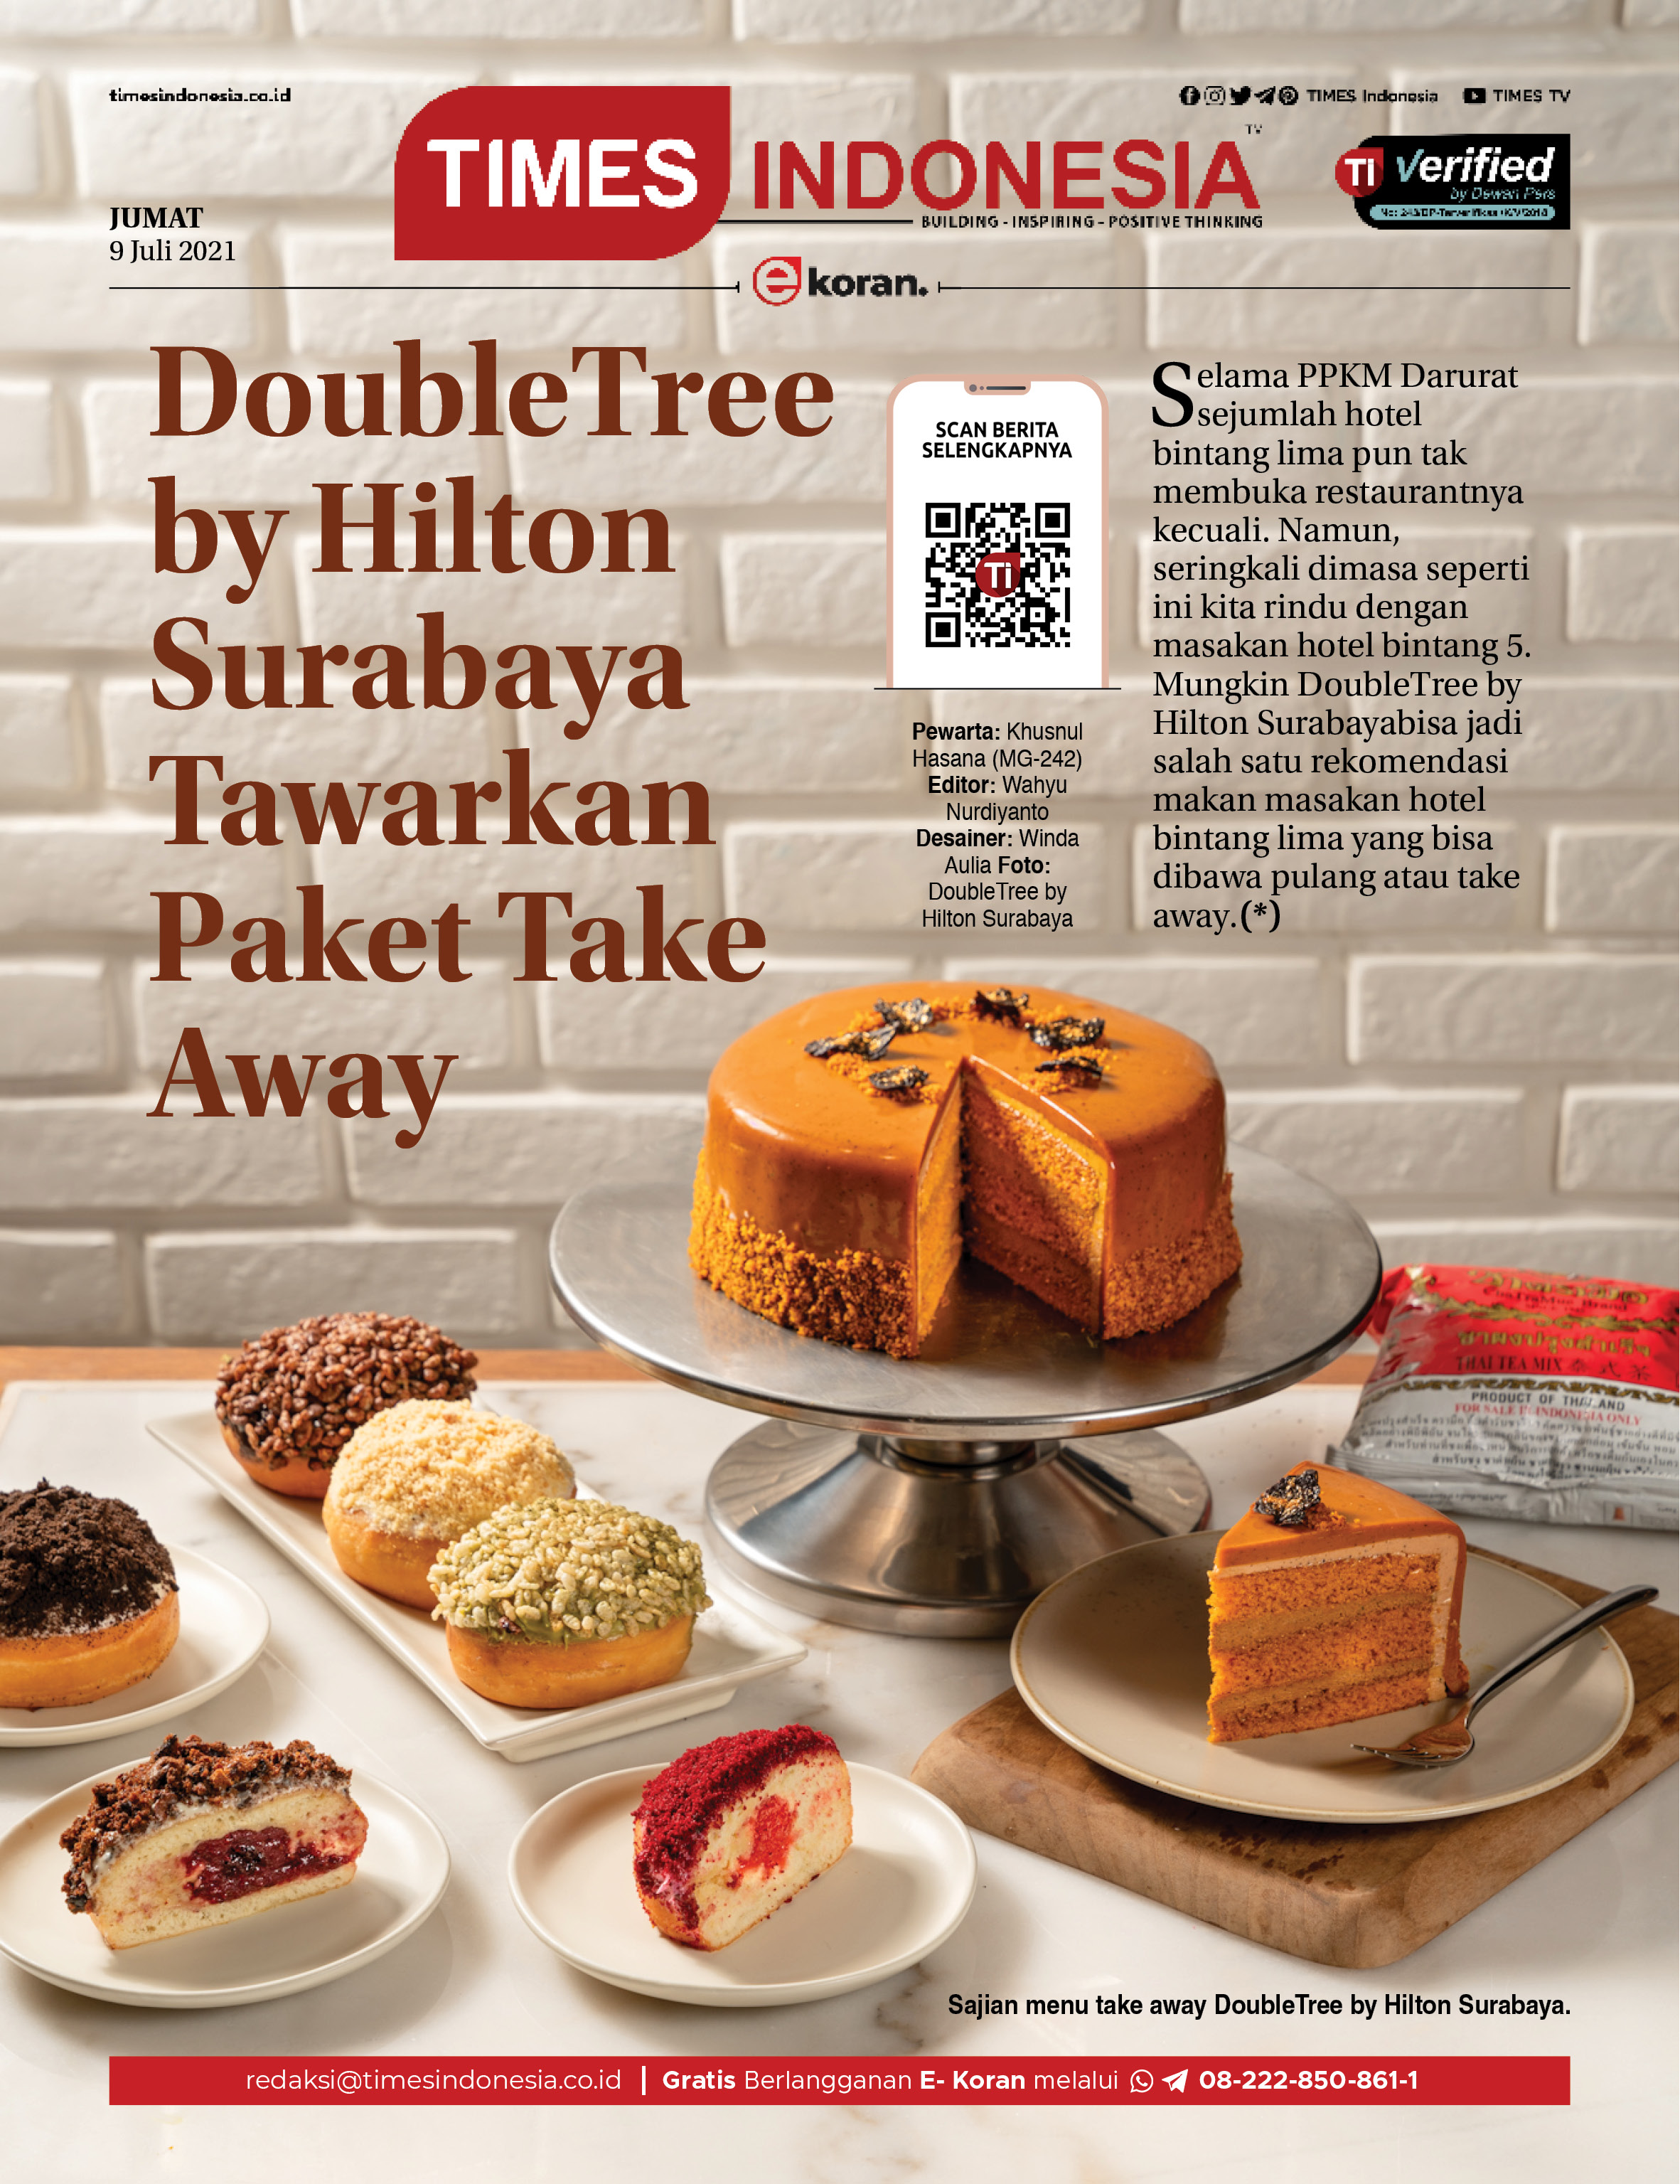 Ekoran-Jumat-9-Juli-2021-DoubleTree-by-Hilton-Surabaya-Tawarkan-Paket-Take-Away.jpg